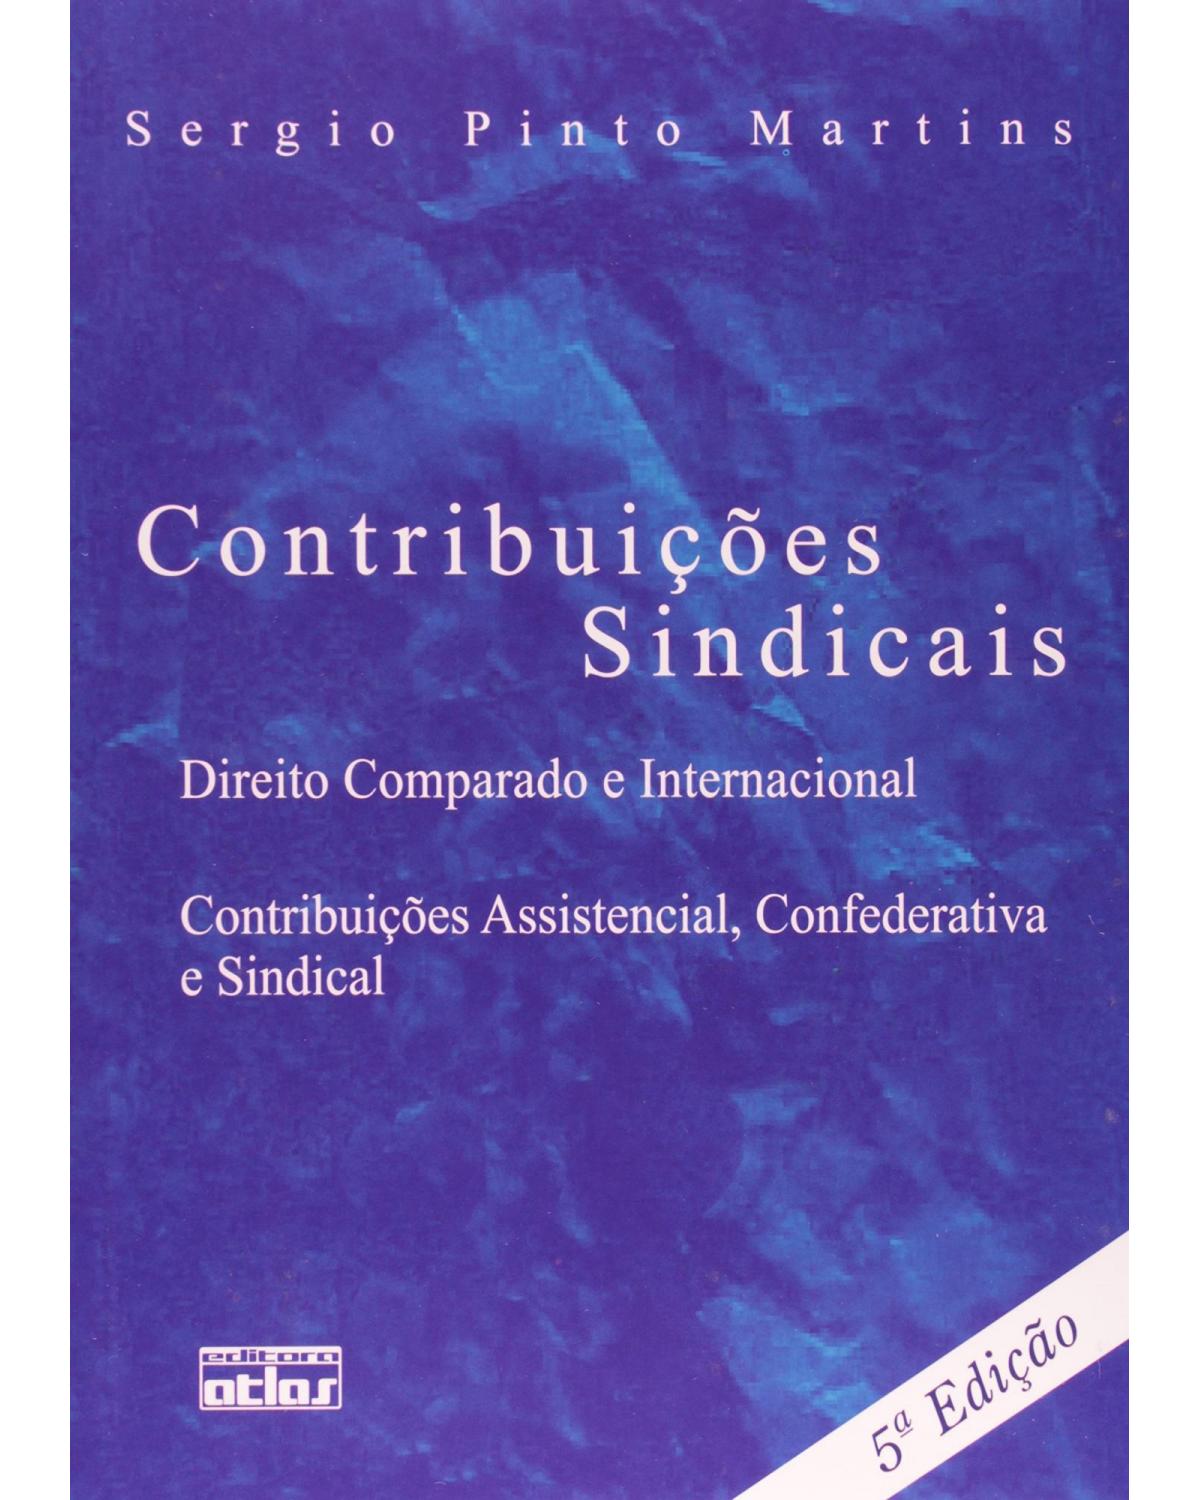 Contribuições sindicais - Direito comparado e internacional, contribuições assistencial, confederativa e sindical - 5ª Edição | 2009